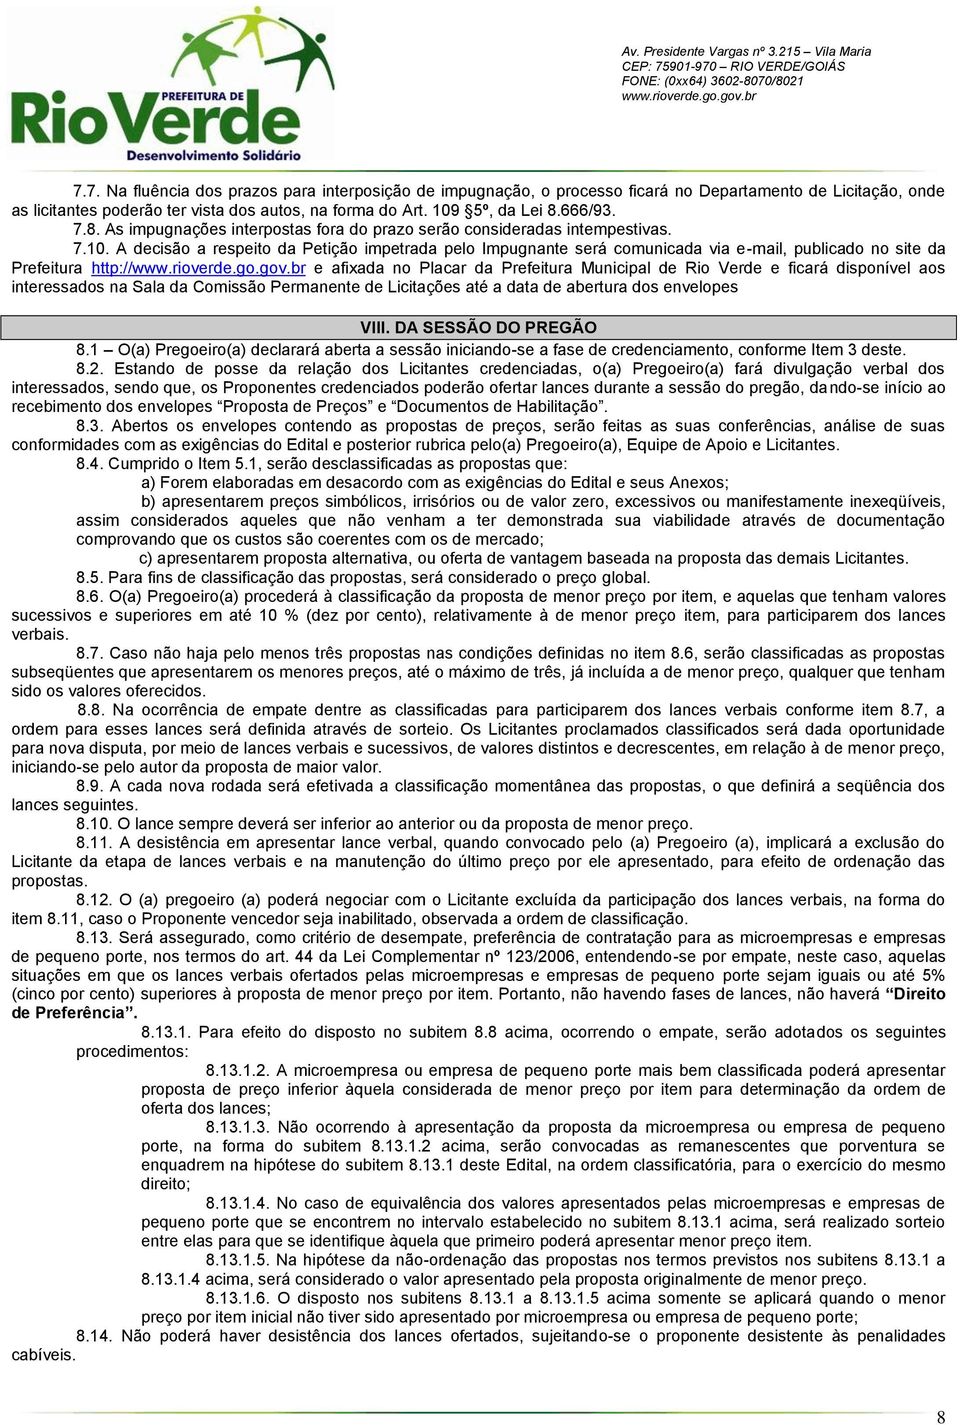 A decisão a respeito da Petição impetrada pelo Impugnante será comunicada via e-mail, publicado no site da Prefeitura http:// e afixada no Placar da Prefeitura Municipal de Rio Verde e ficará